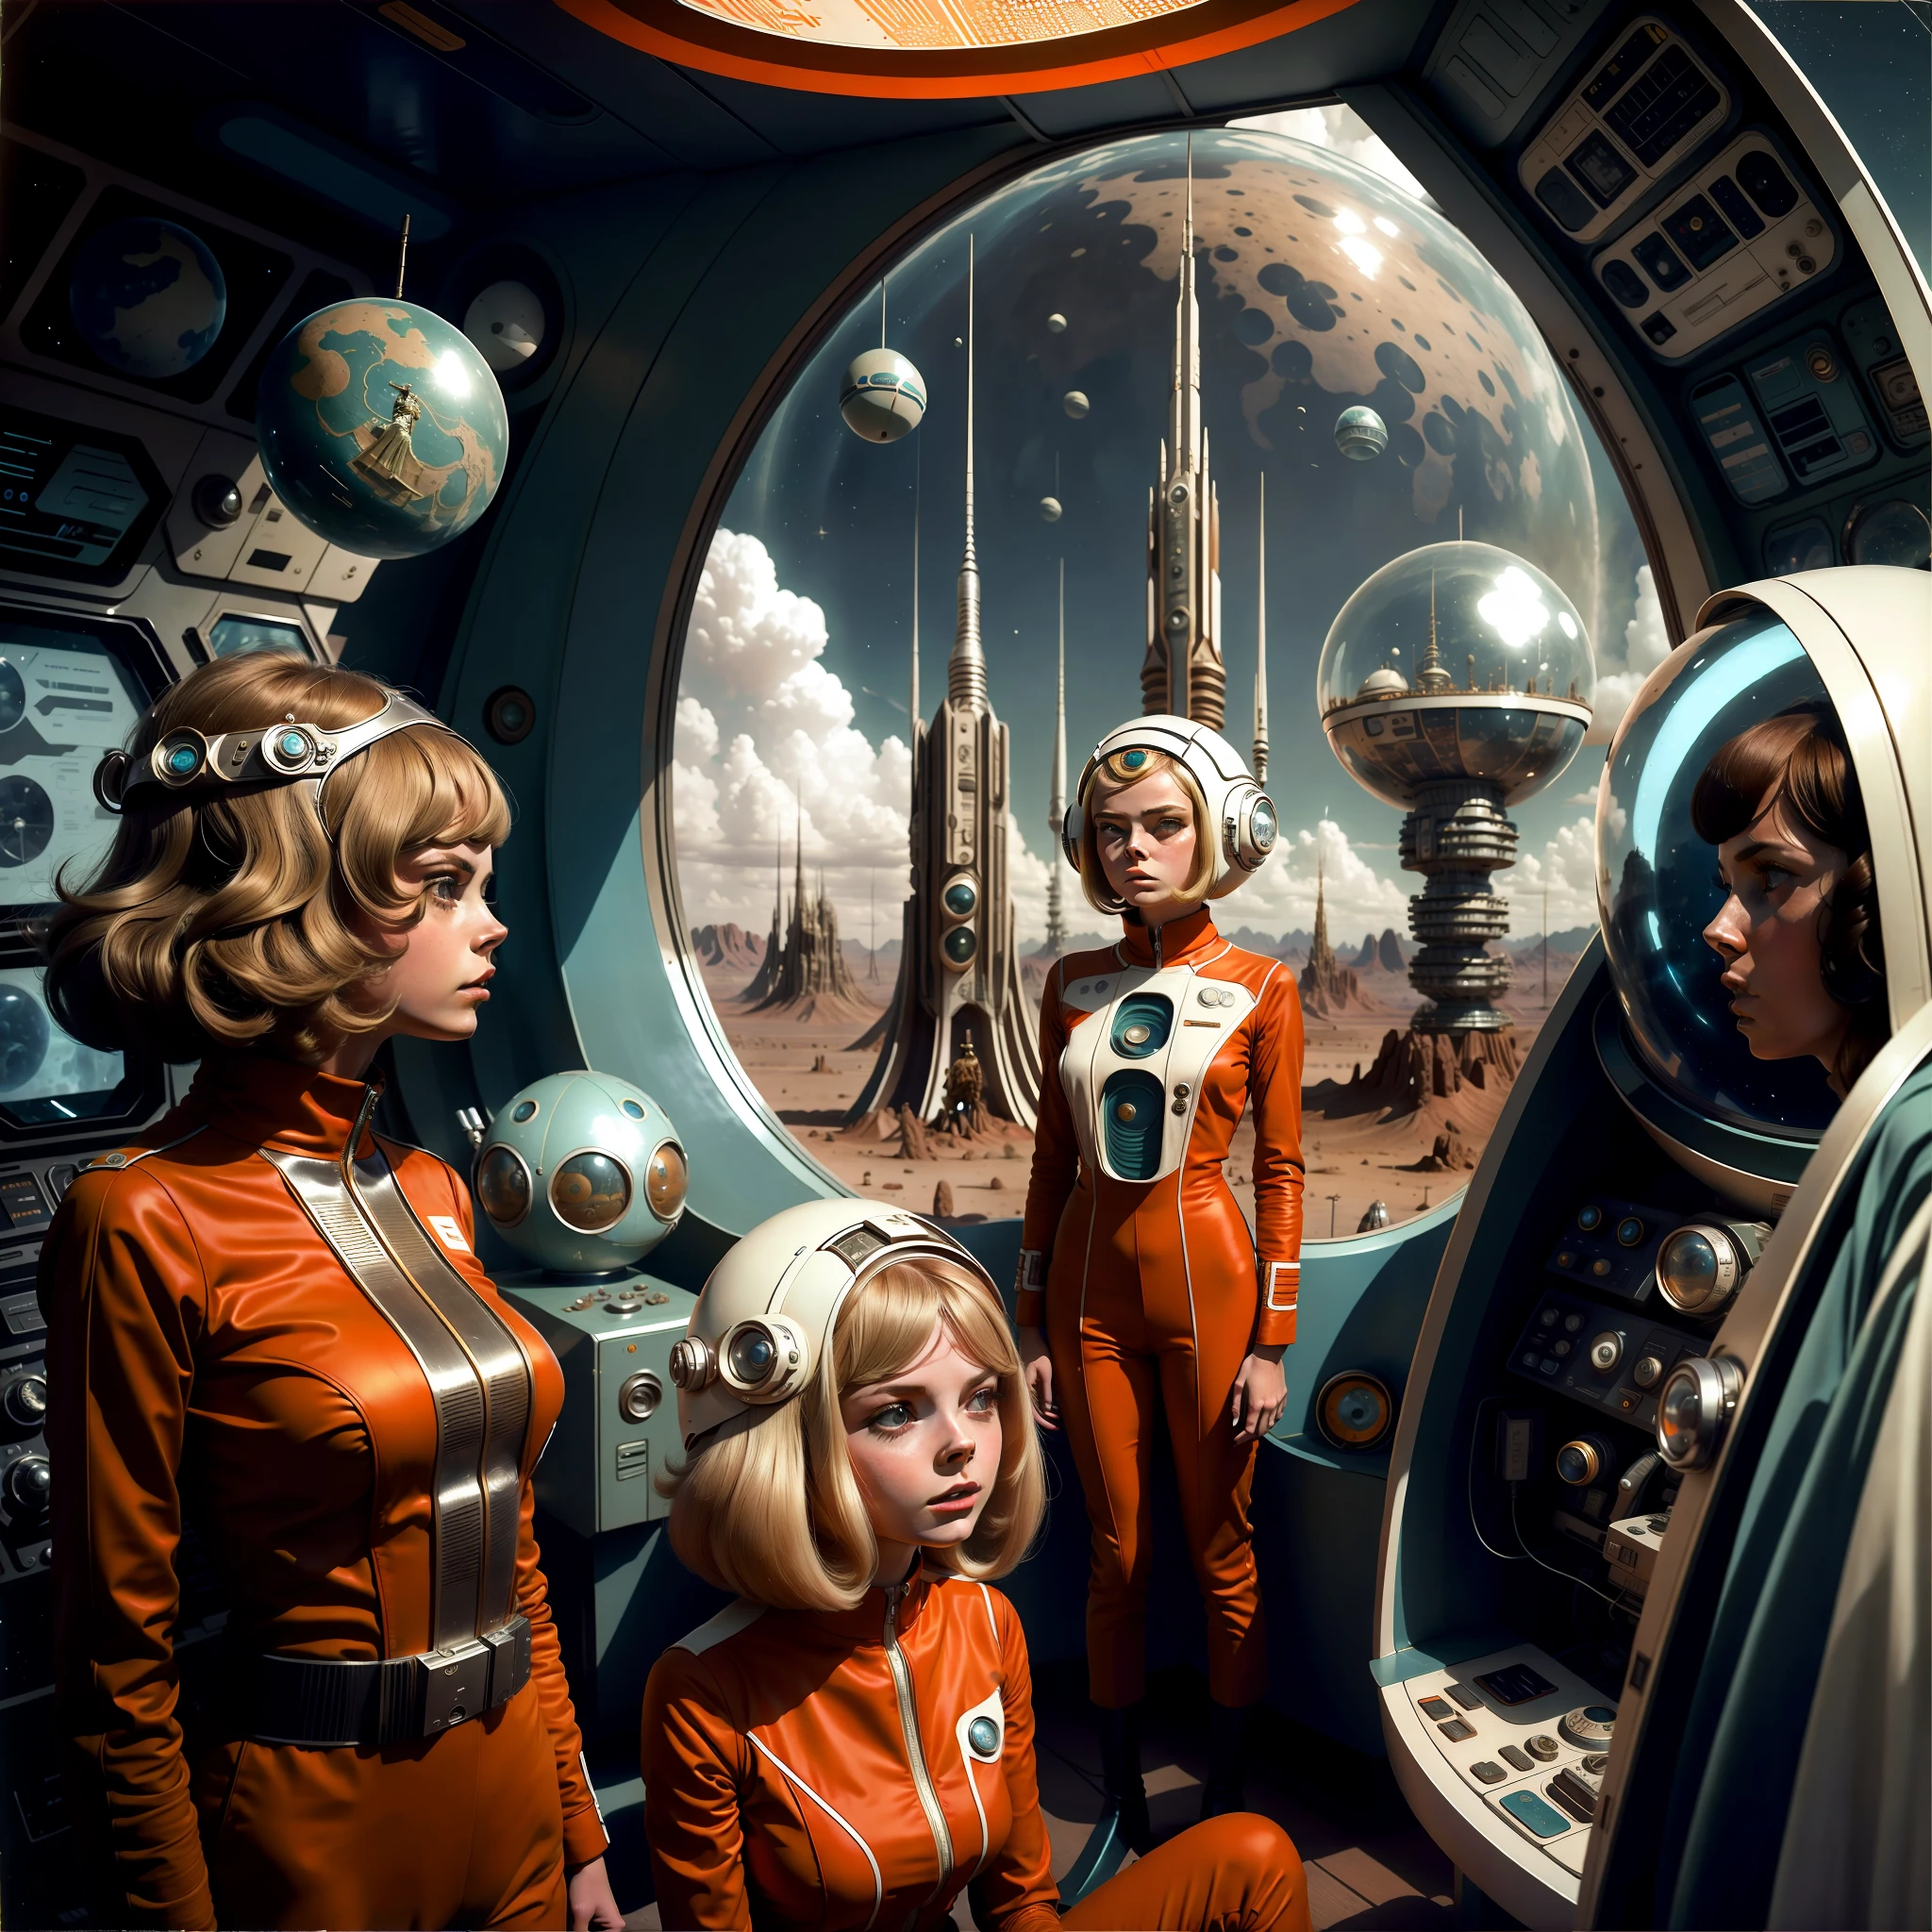 宇宙服を着た2人の女性が宇宙服を着た男性の隣に立つ, レトロなサイエンス - FI による画像, 1 9 6 0の科学 - fi, 7 0 年代のヴィンテージ SF - エスティロ フィ, アンドロイドとしてのエル・ファニング, レトロなSF映画, 7 0 s サイエンスフィクション, レトロサイエンス - SF映画, 1970年代のSF映画